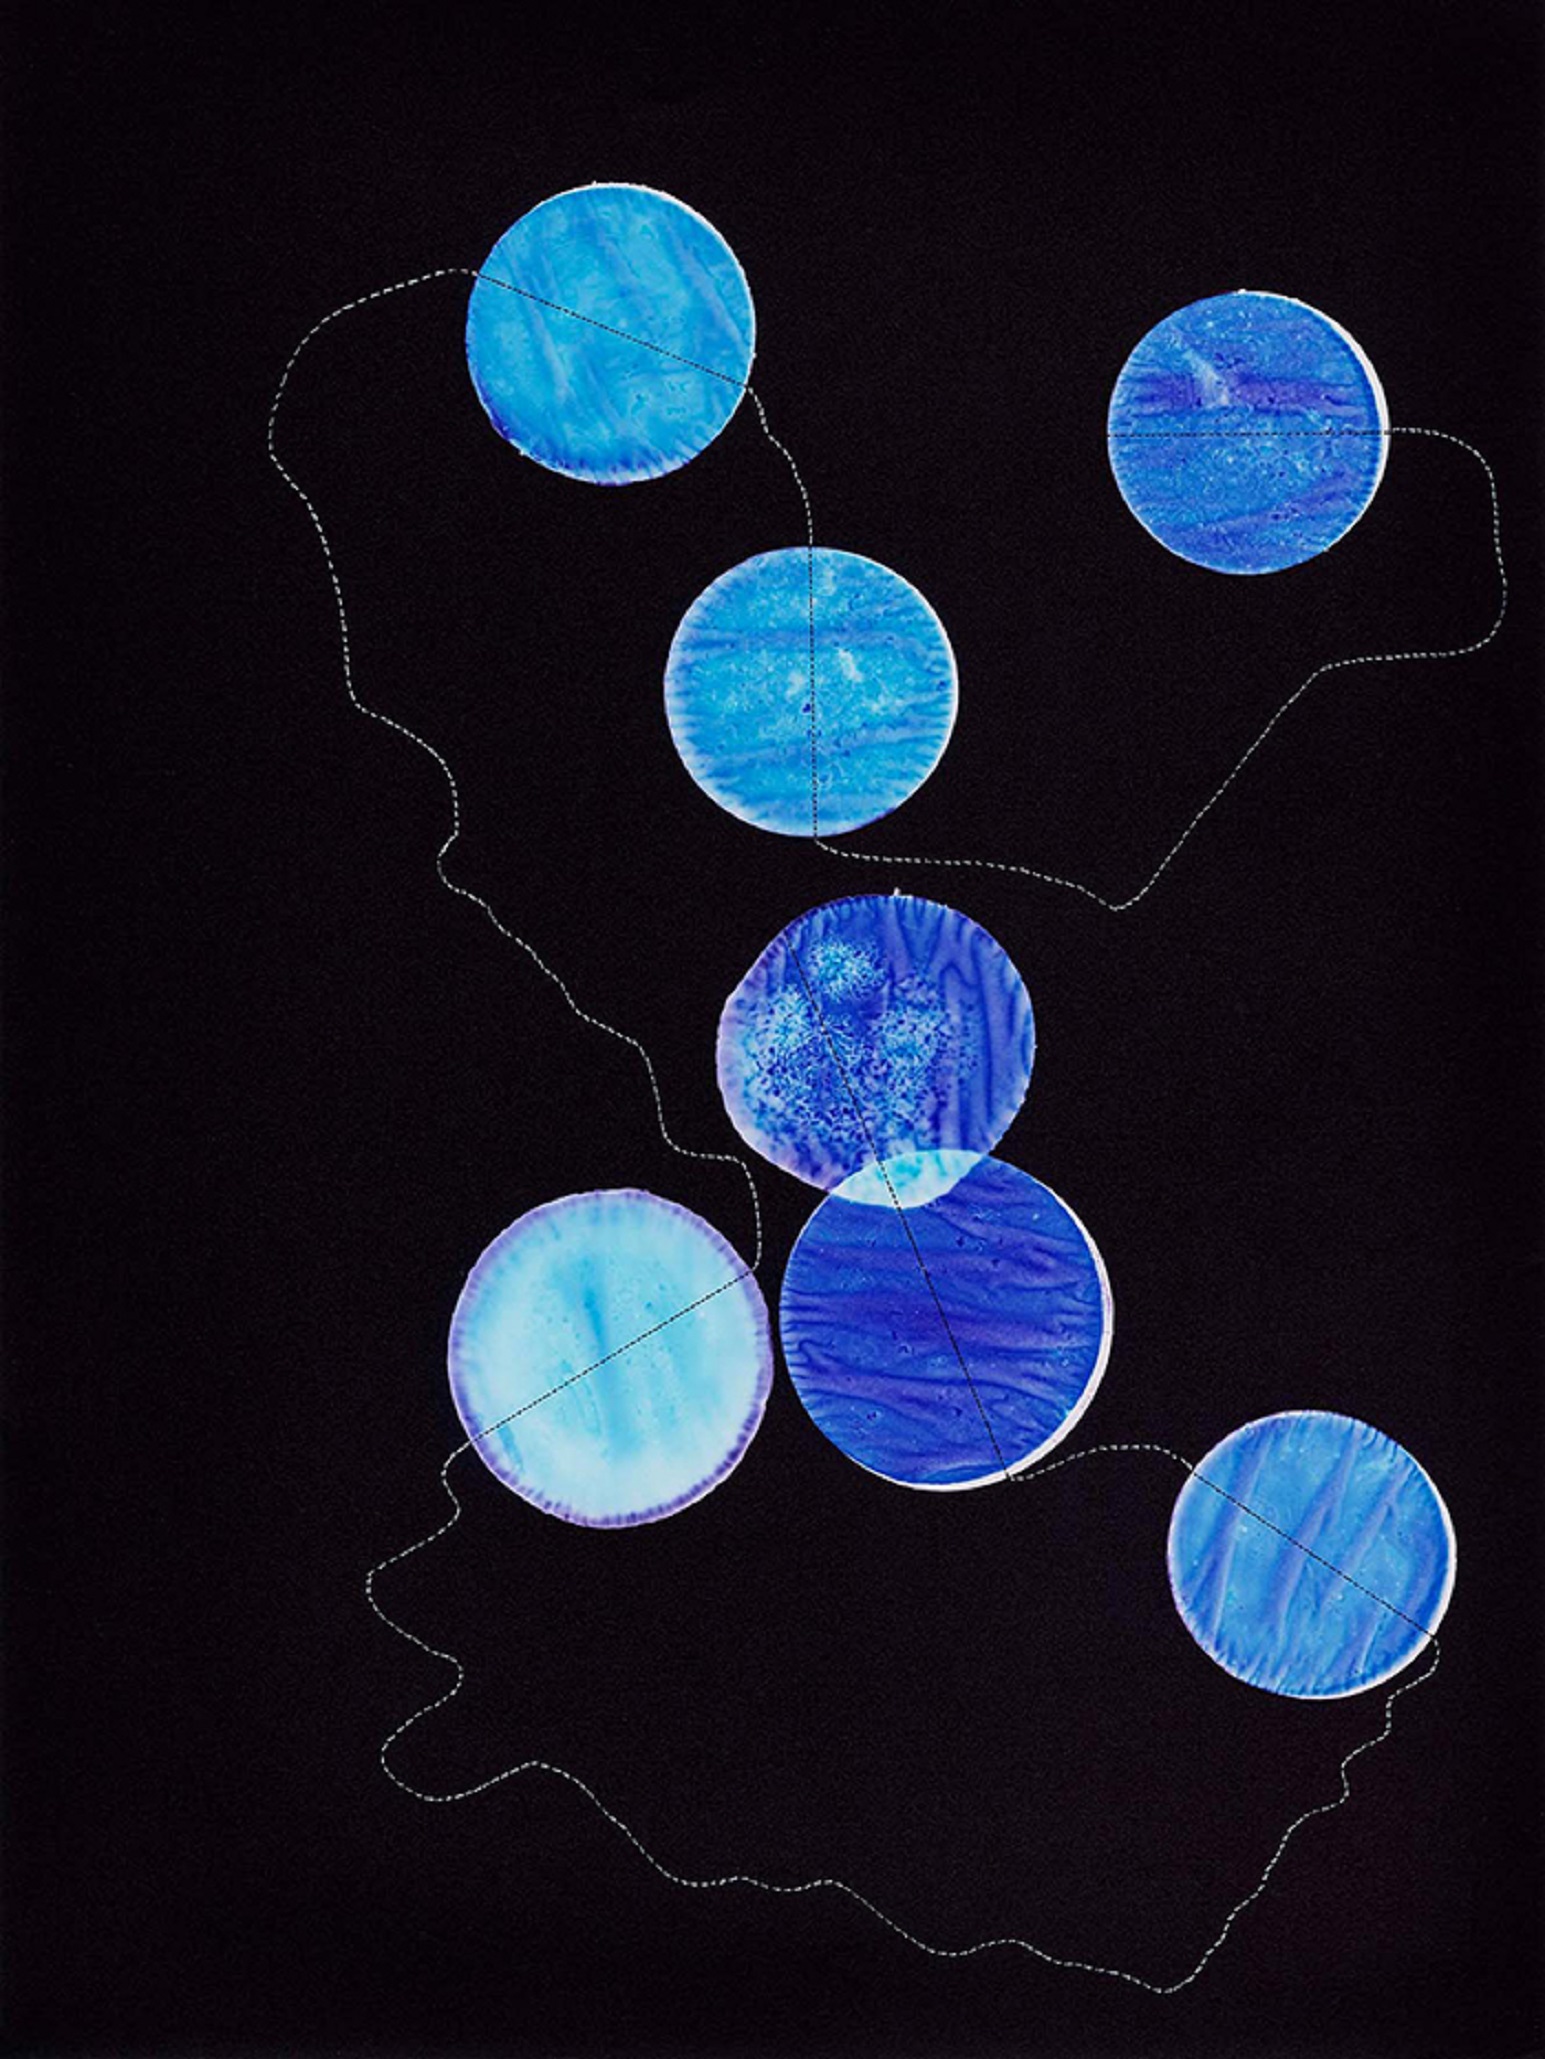 runde, blaugefärbte Stoffstücke mit einem Faden verbunden vor schwarzem Hintergrund